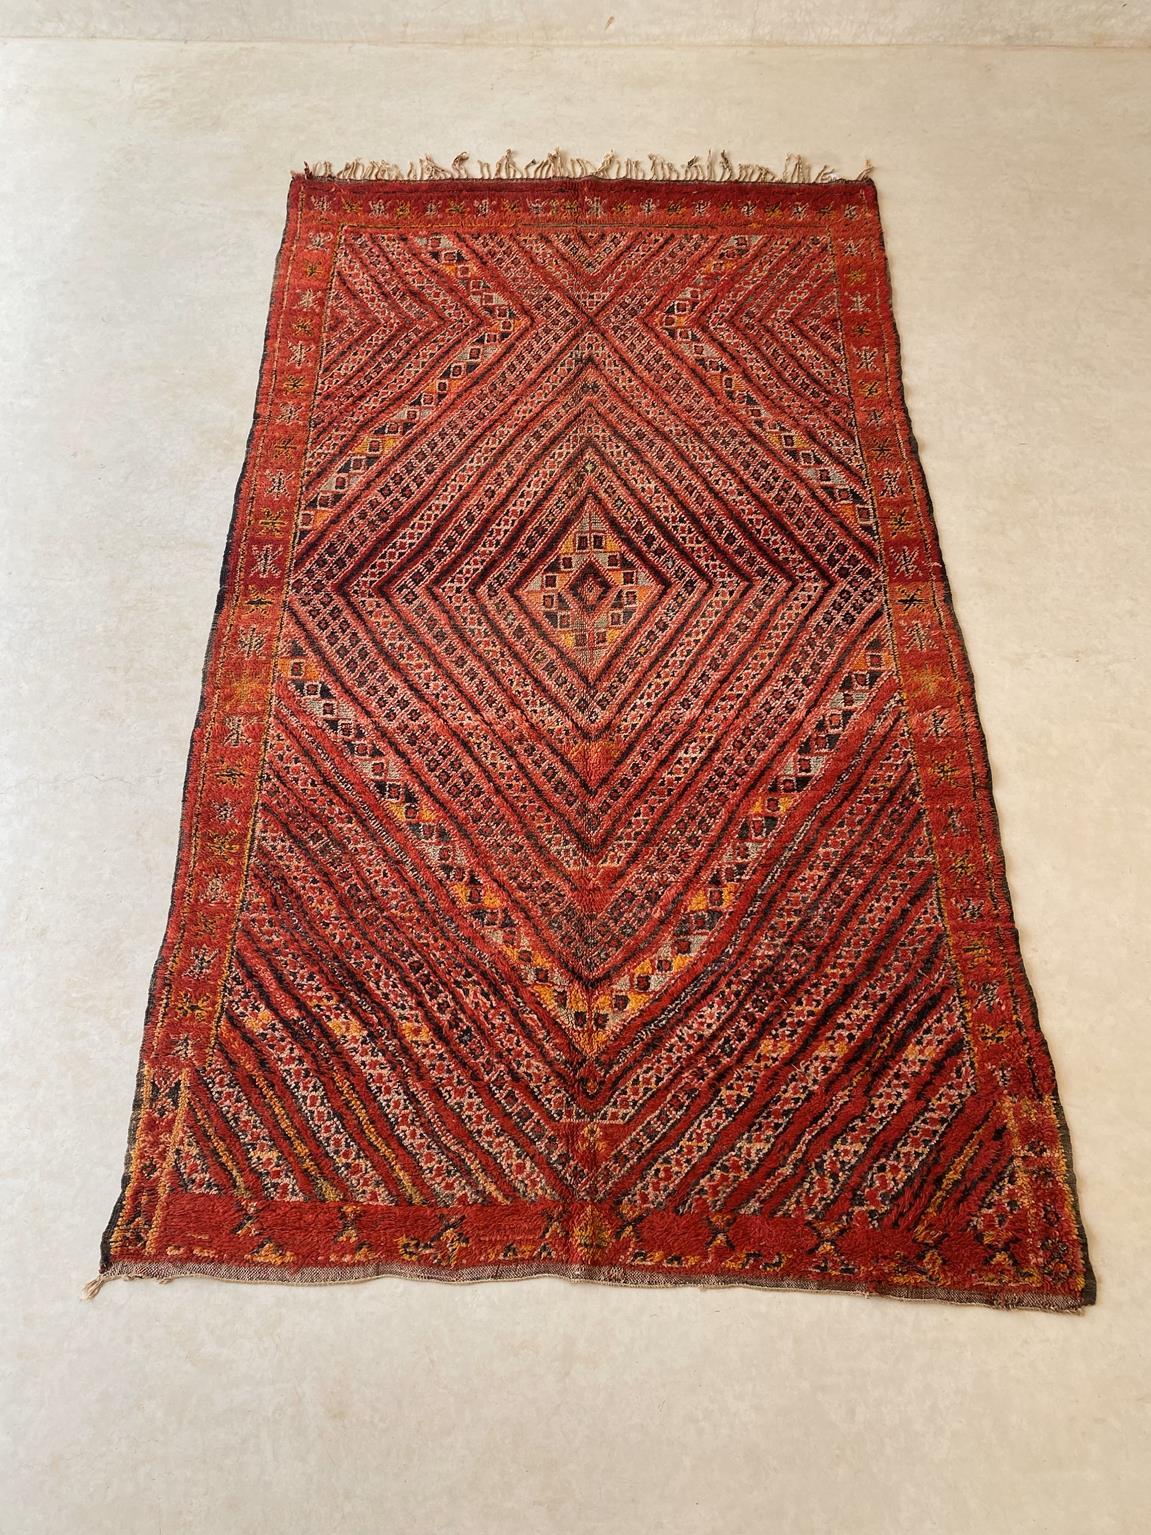 Ce magnifique tapis vintage de la tribe Rugs est une belle trouvaille ! La couleur de fond principale est un rouge vif avec des motifs complexes en noir, beige, jaune/orange et vert sauge. Le motif est un losange central multiplié et l'ensemble du